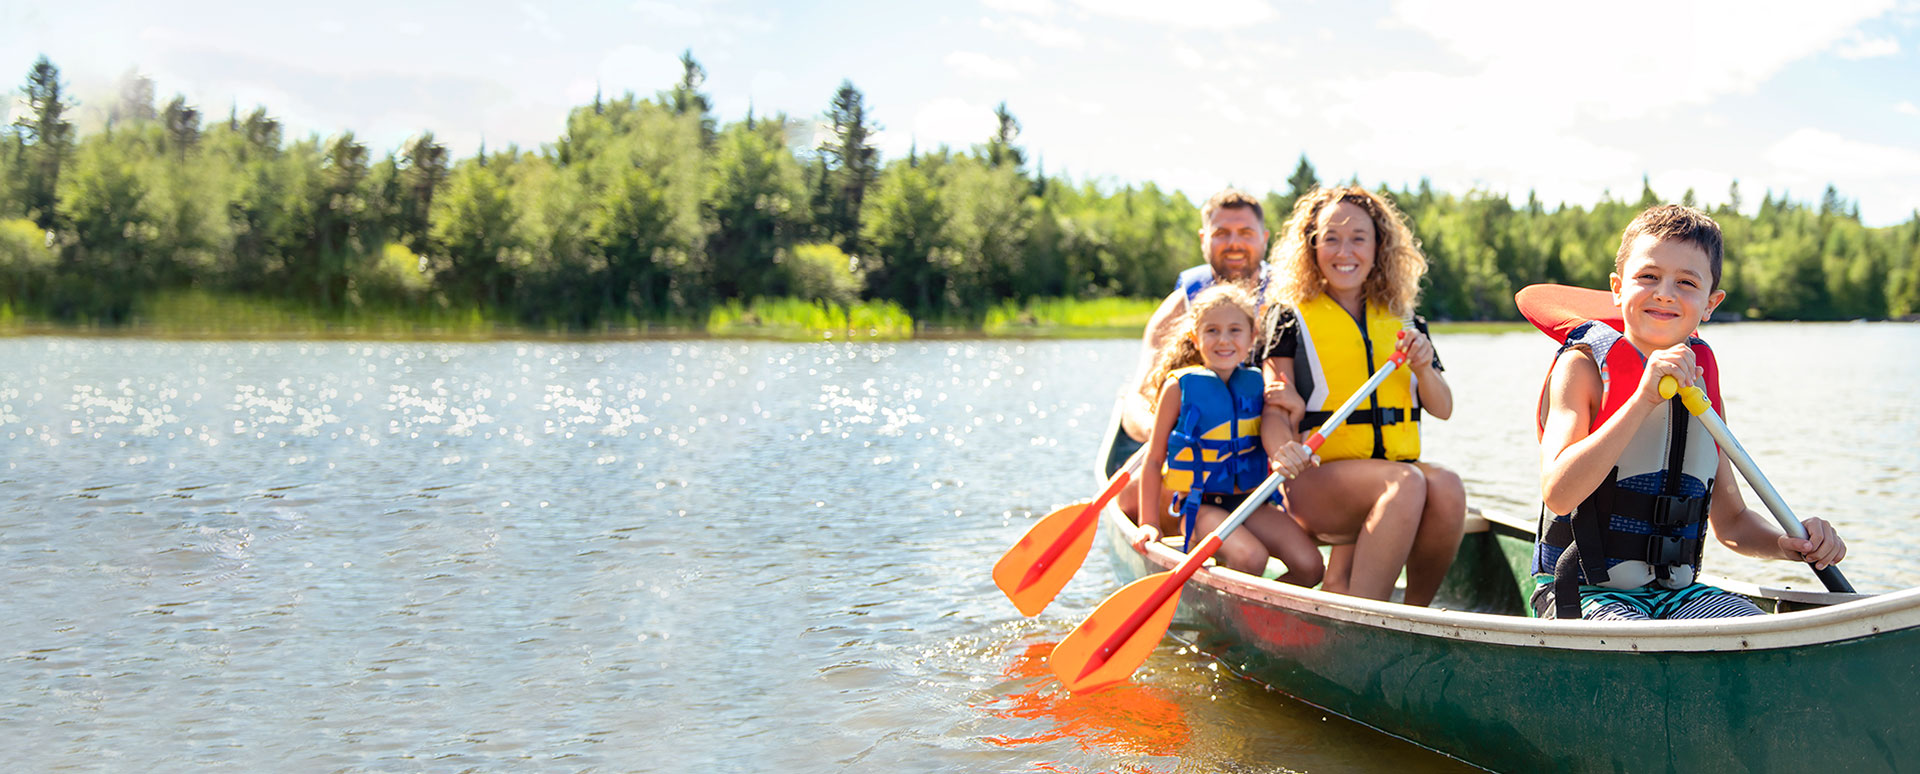 family in canoe having fun